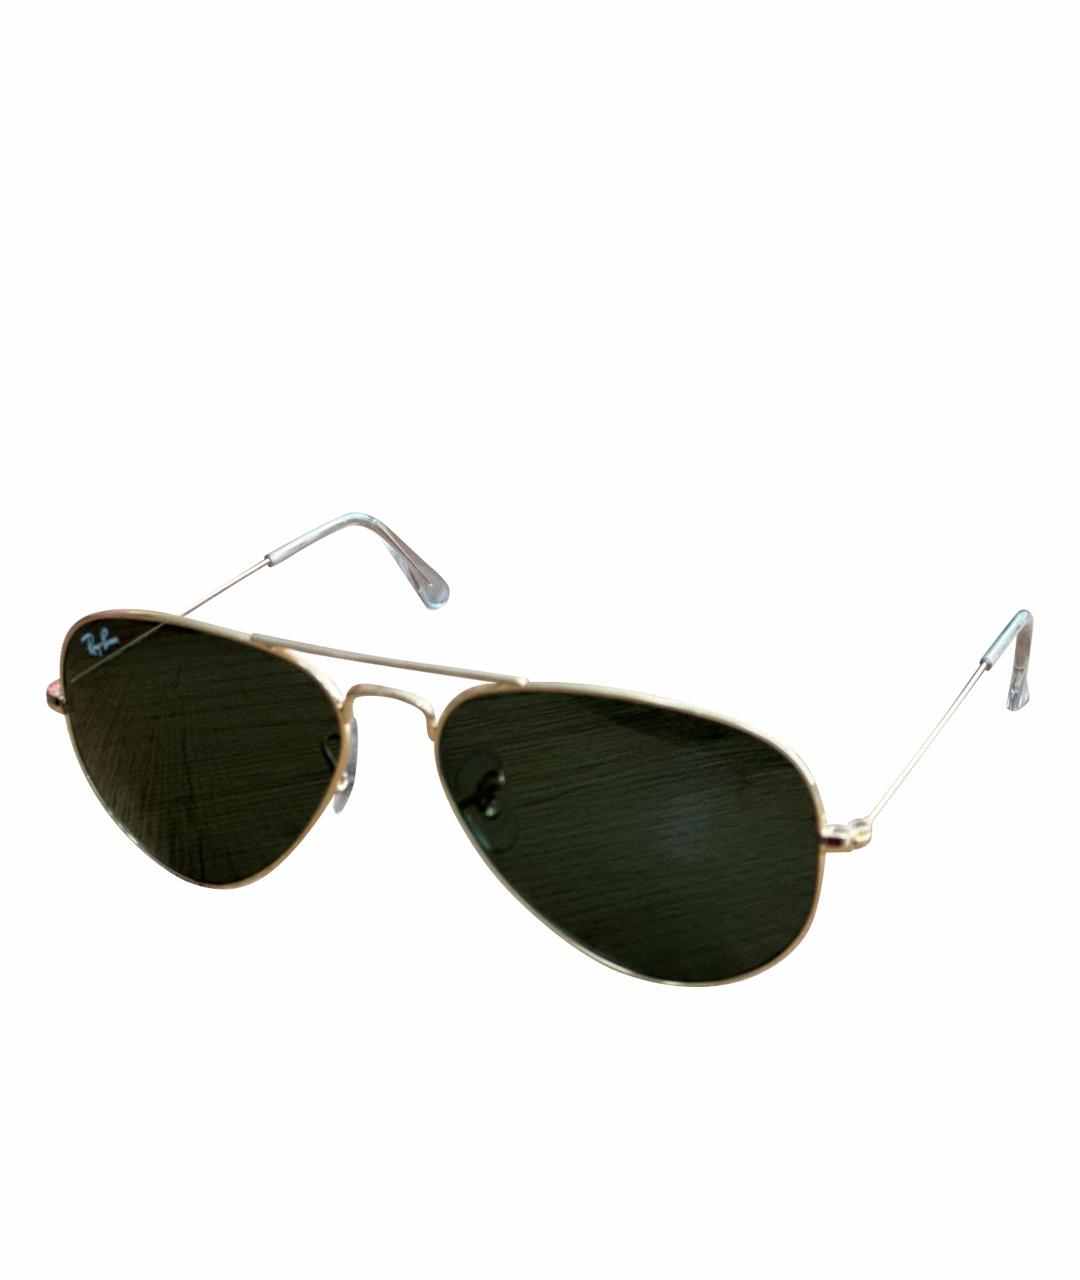 RAY BAN Зеленые металлические солнцезащитные очки, фото 1